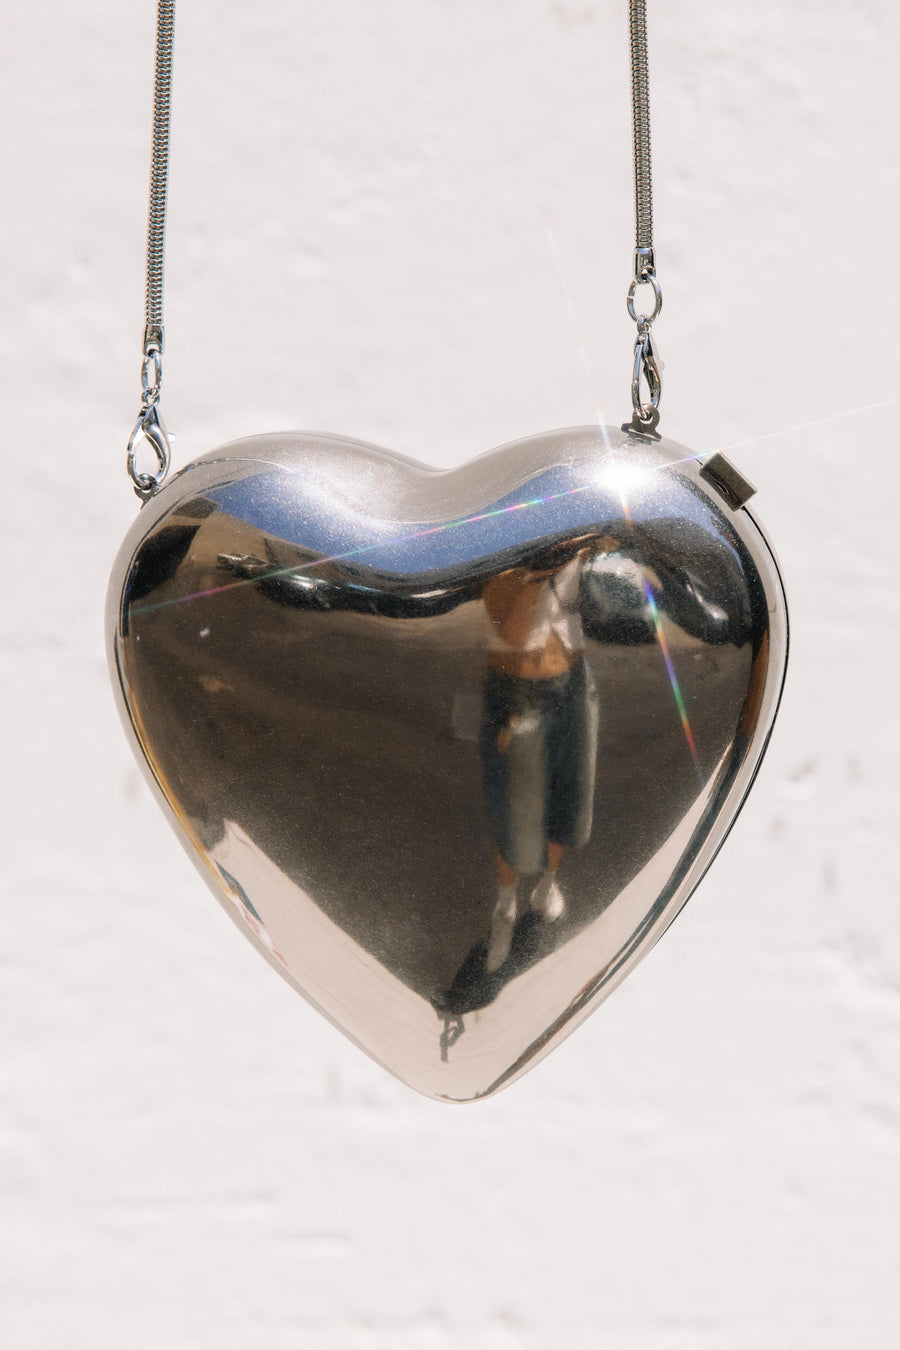 Metal Heart Clutch in Silver/Black